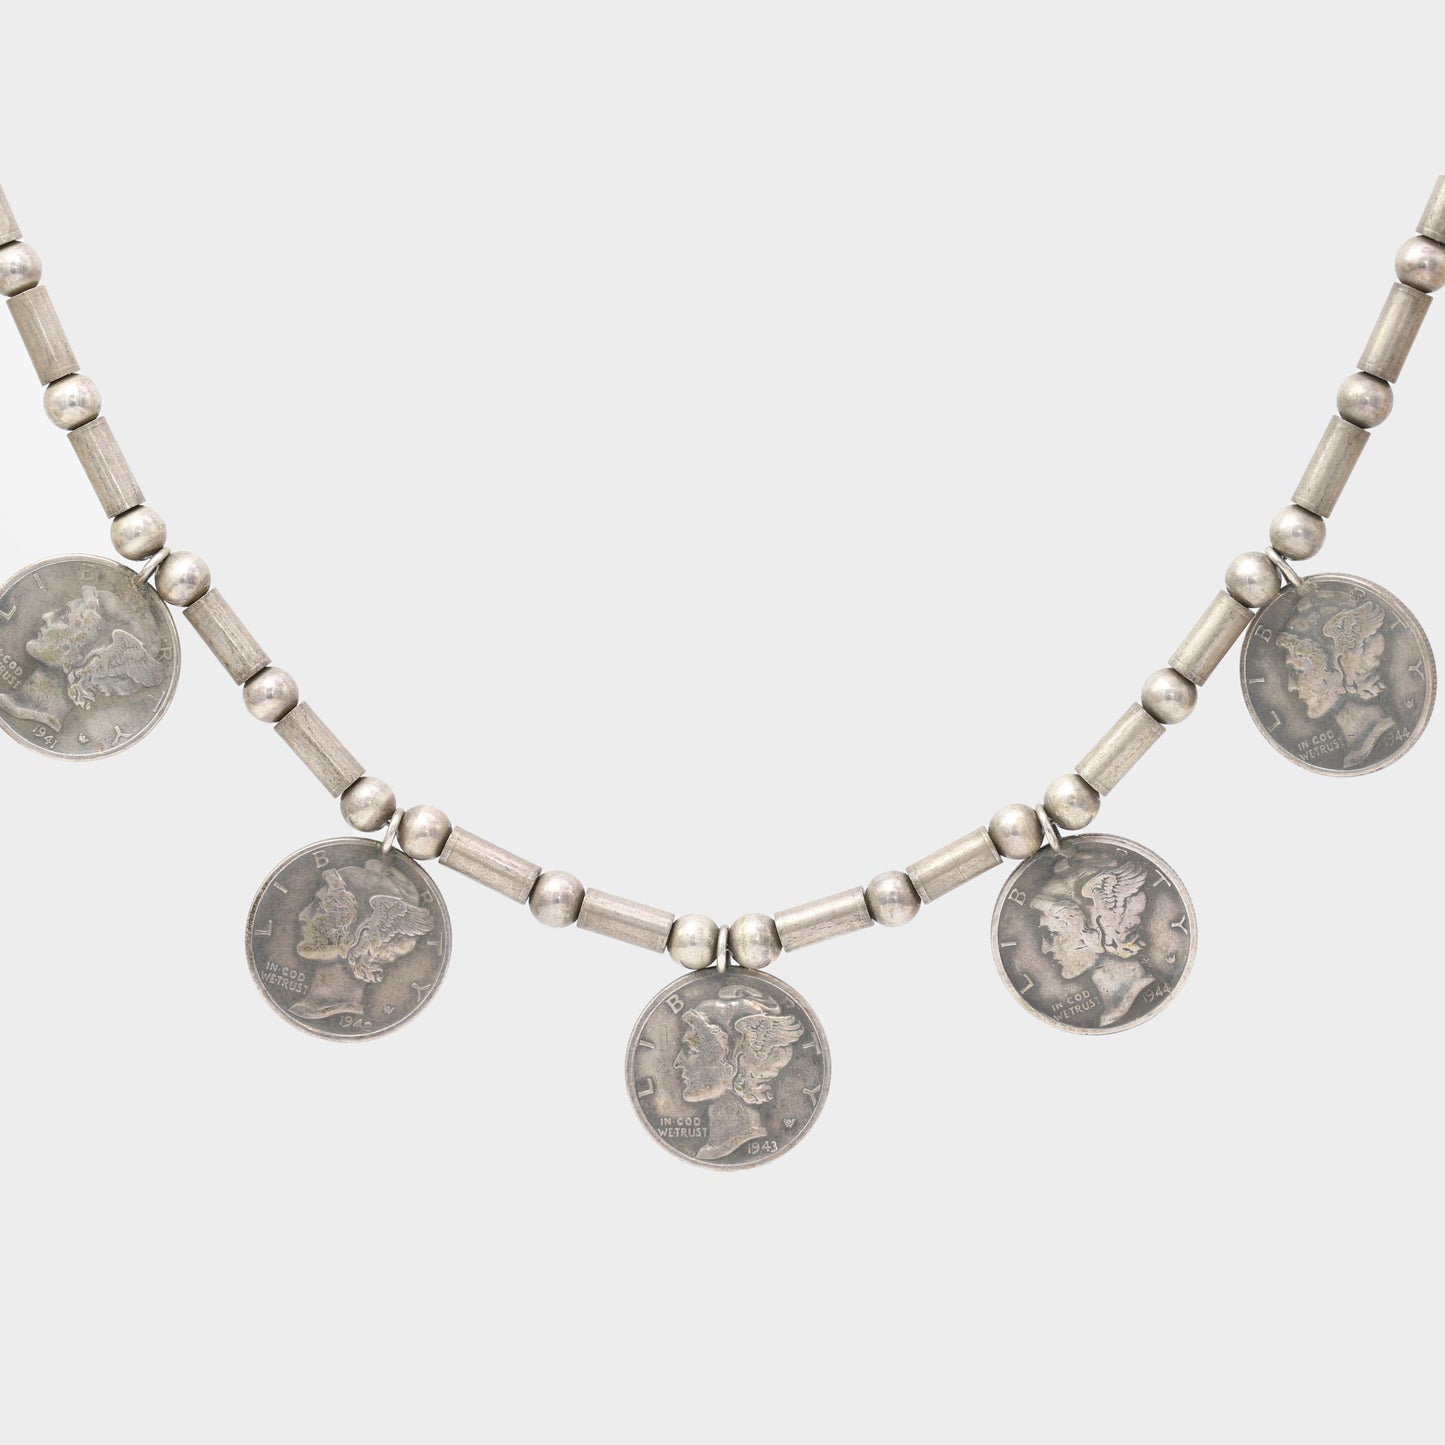 Mercury Dime Amulet Necklace